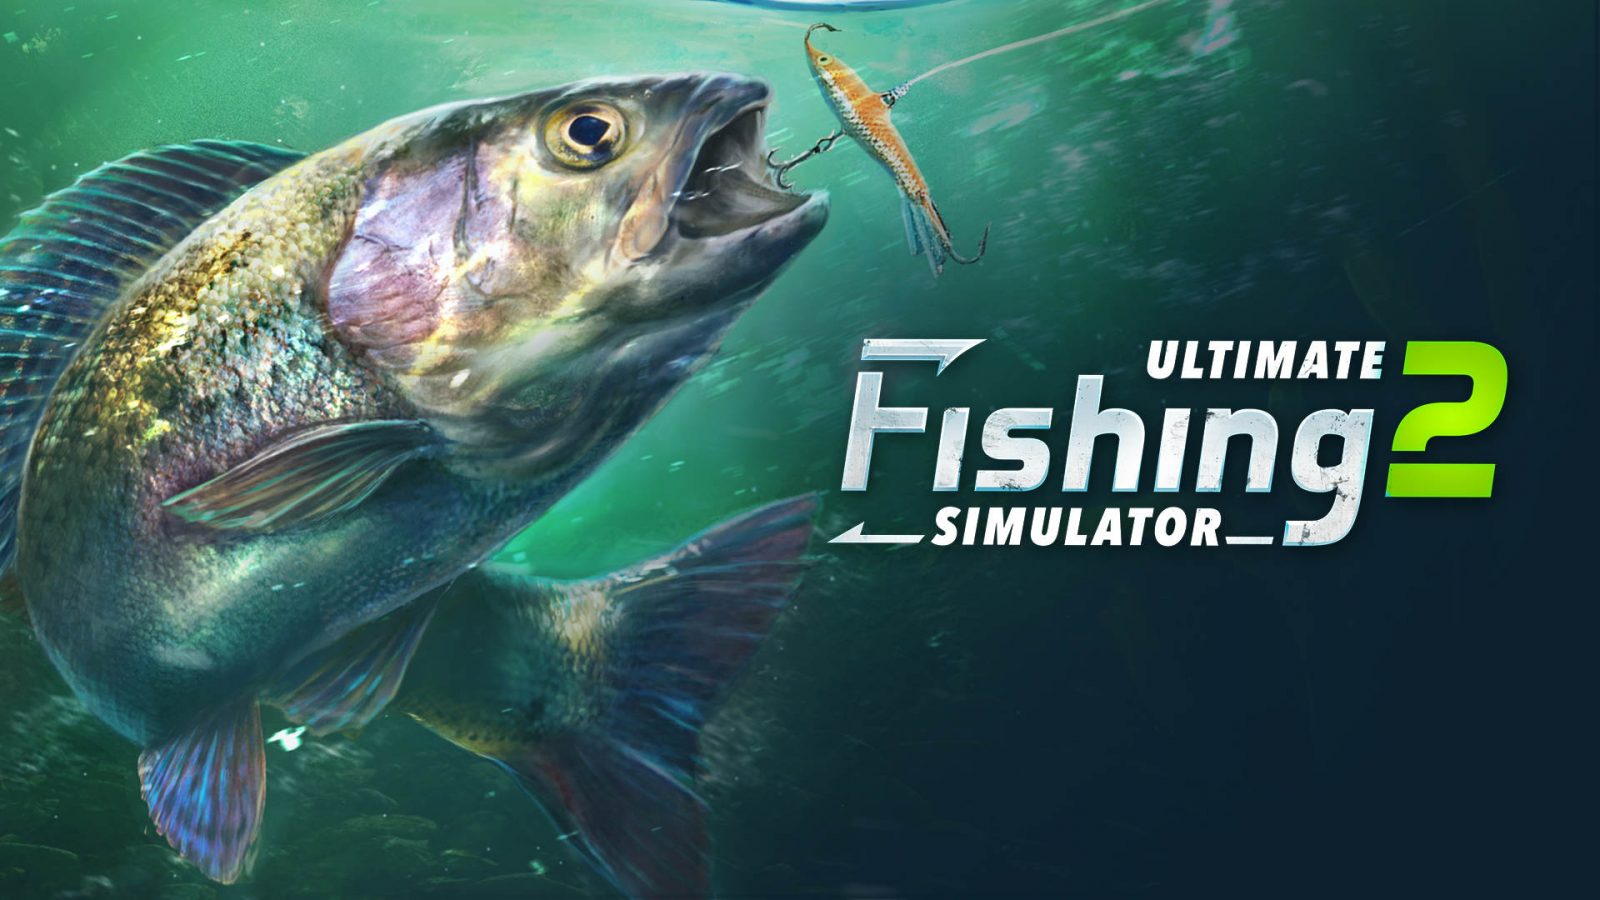 Ultimate Fishing Simulator 2: sequência do simulador de pesca chega ao Switch em 2022